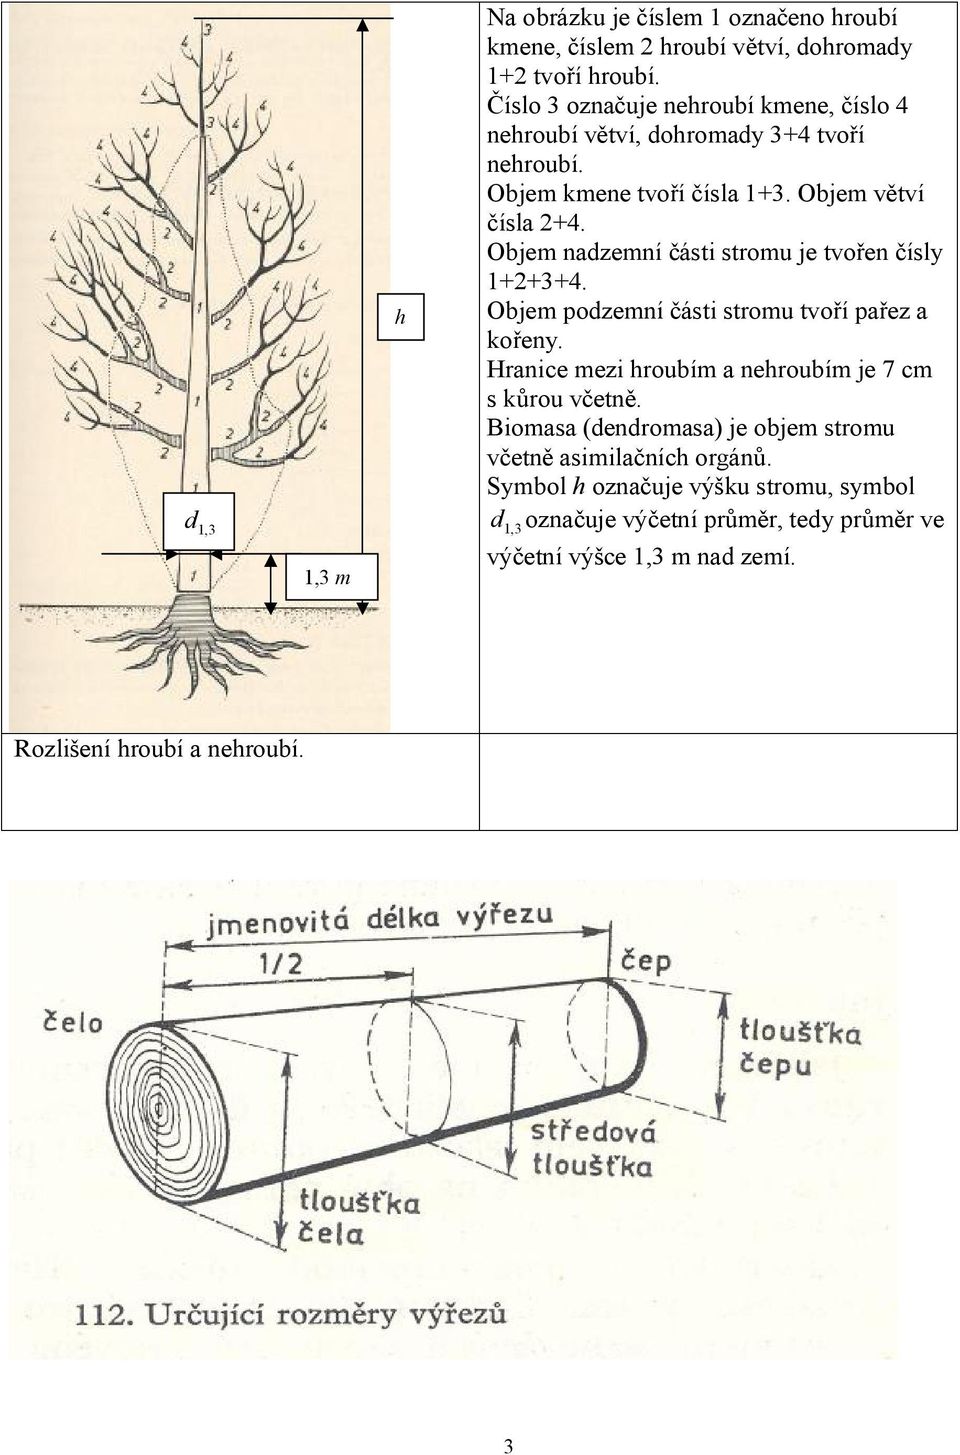 Objem nadzemní části stromu je tvořen čísly 1+2+3+4. Objem podzemní části stromu tvoří pařez a kořeny.